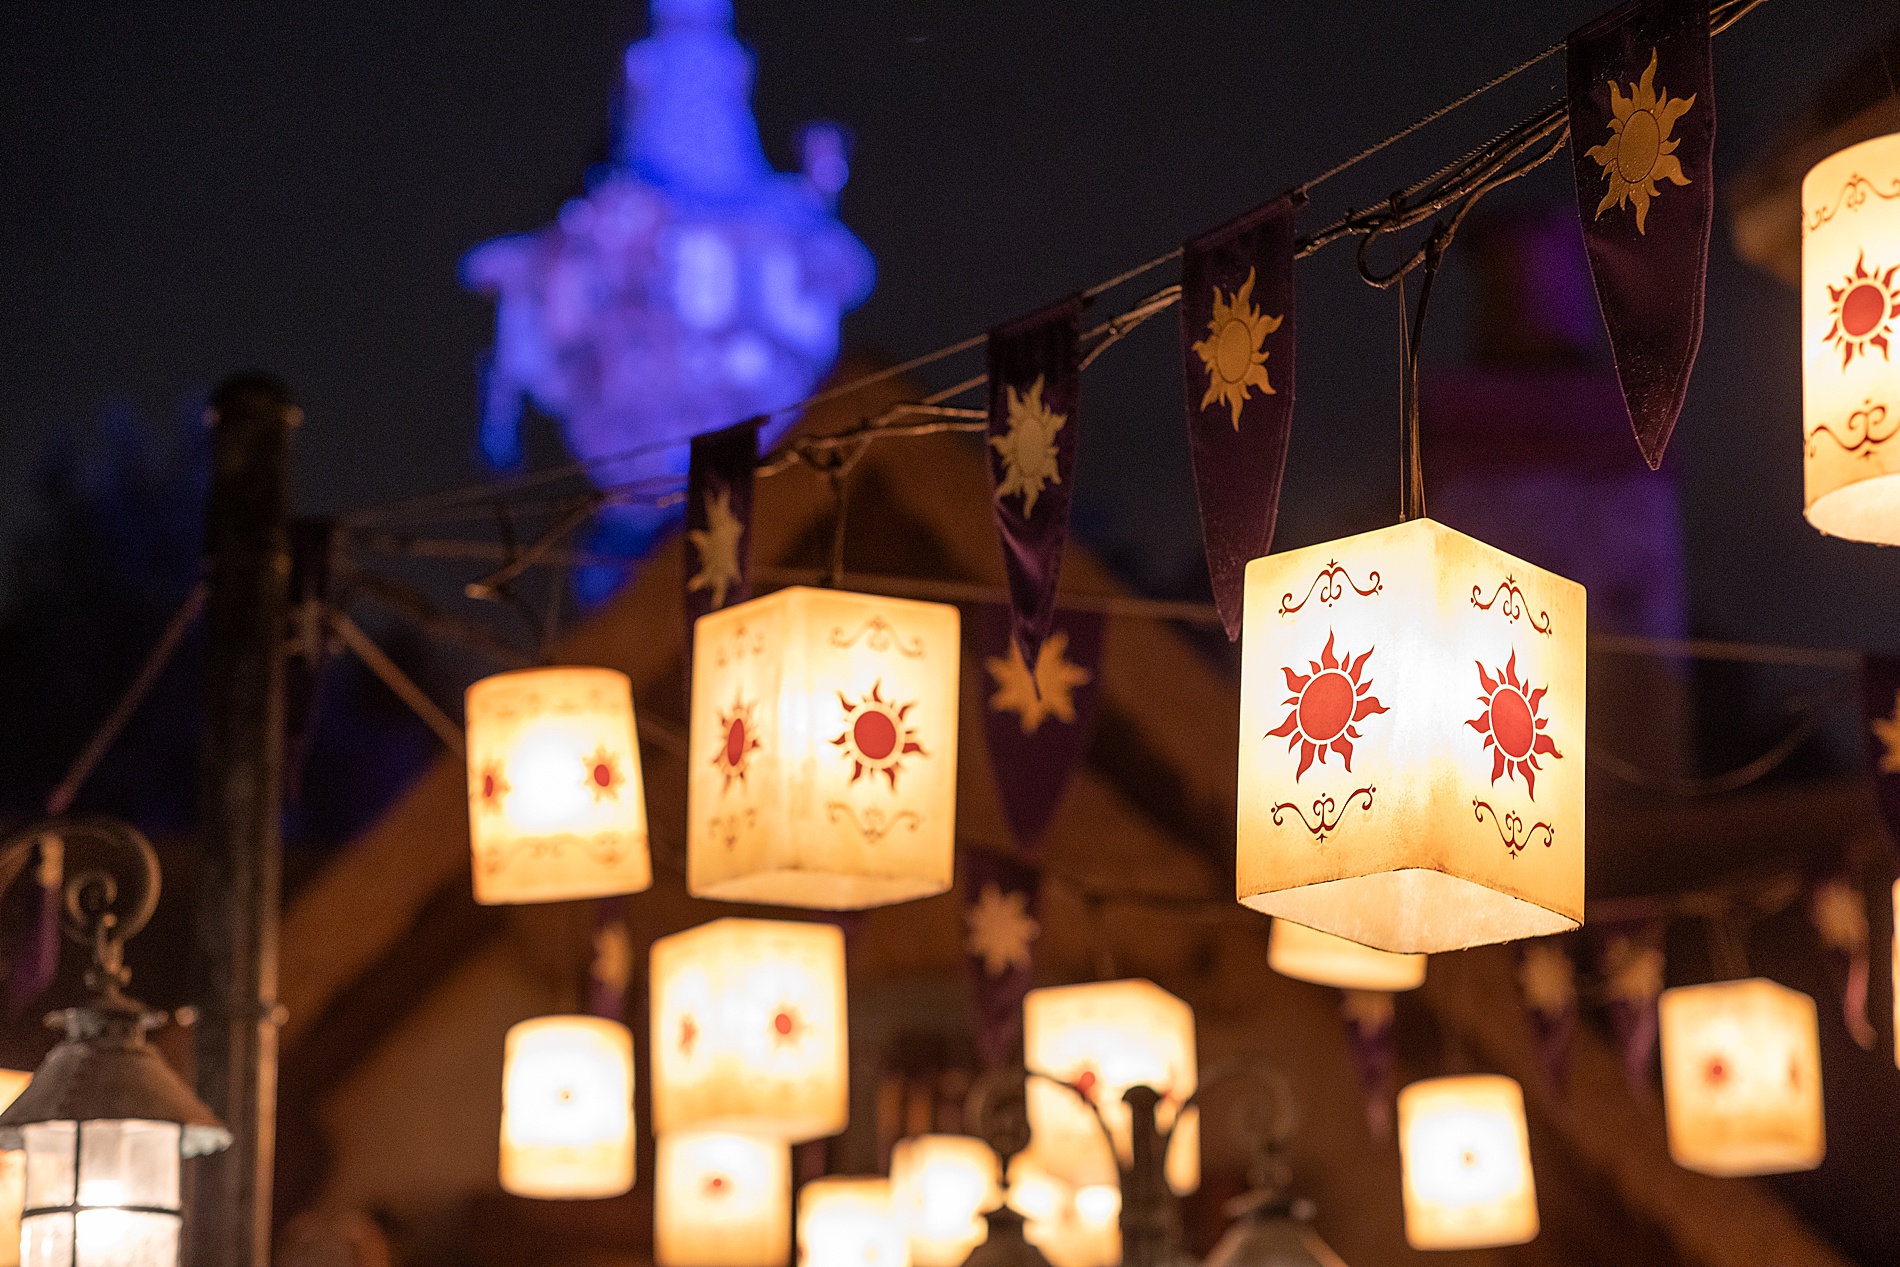 Disney tangled lanterns at night